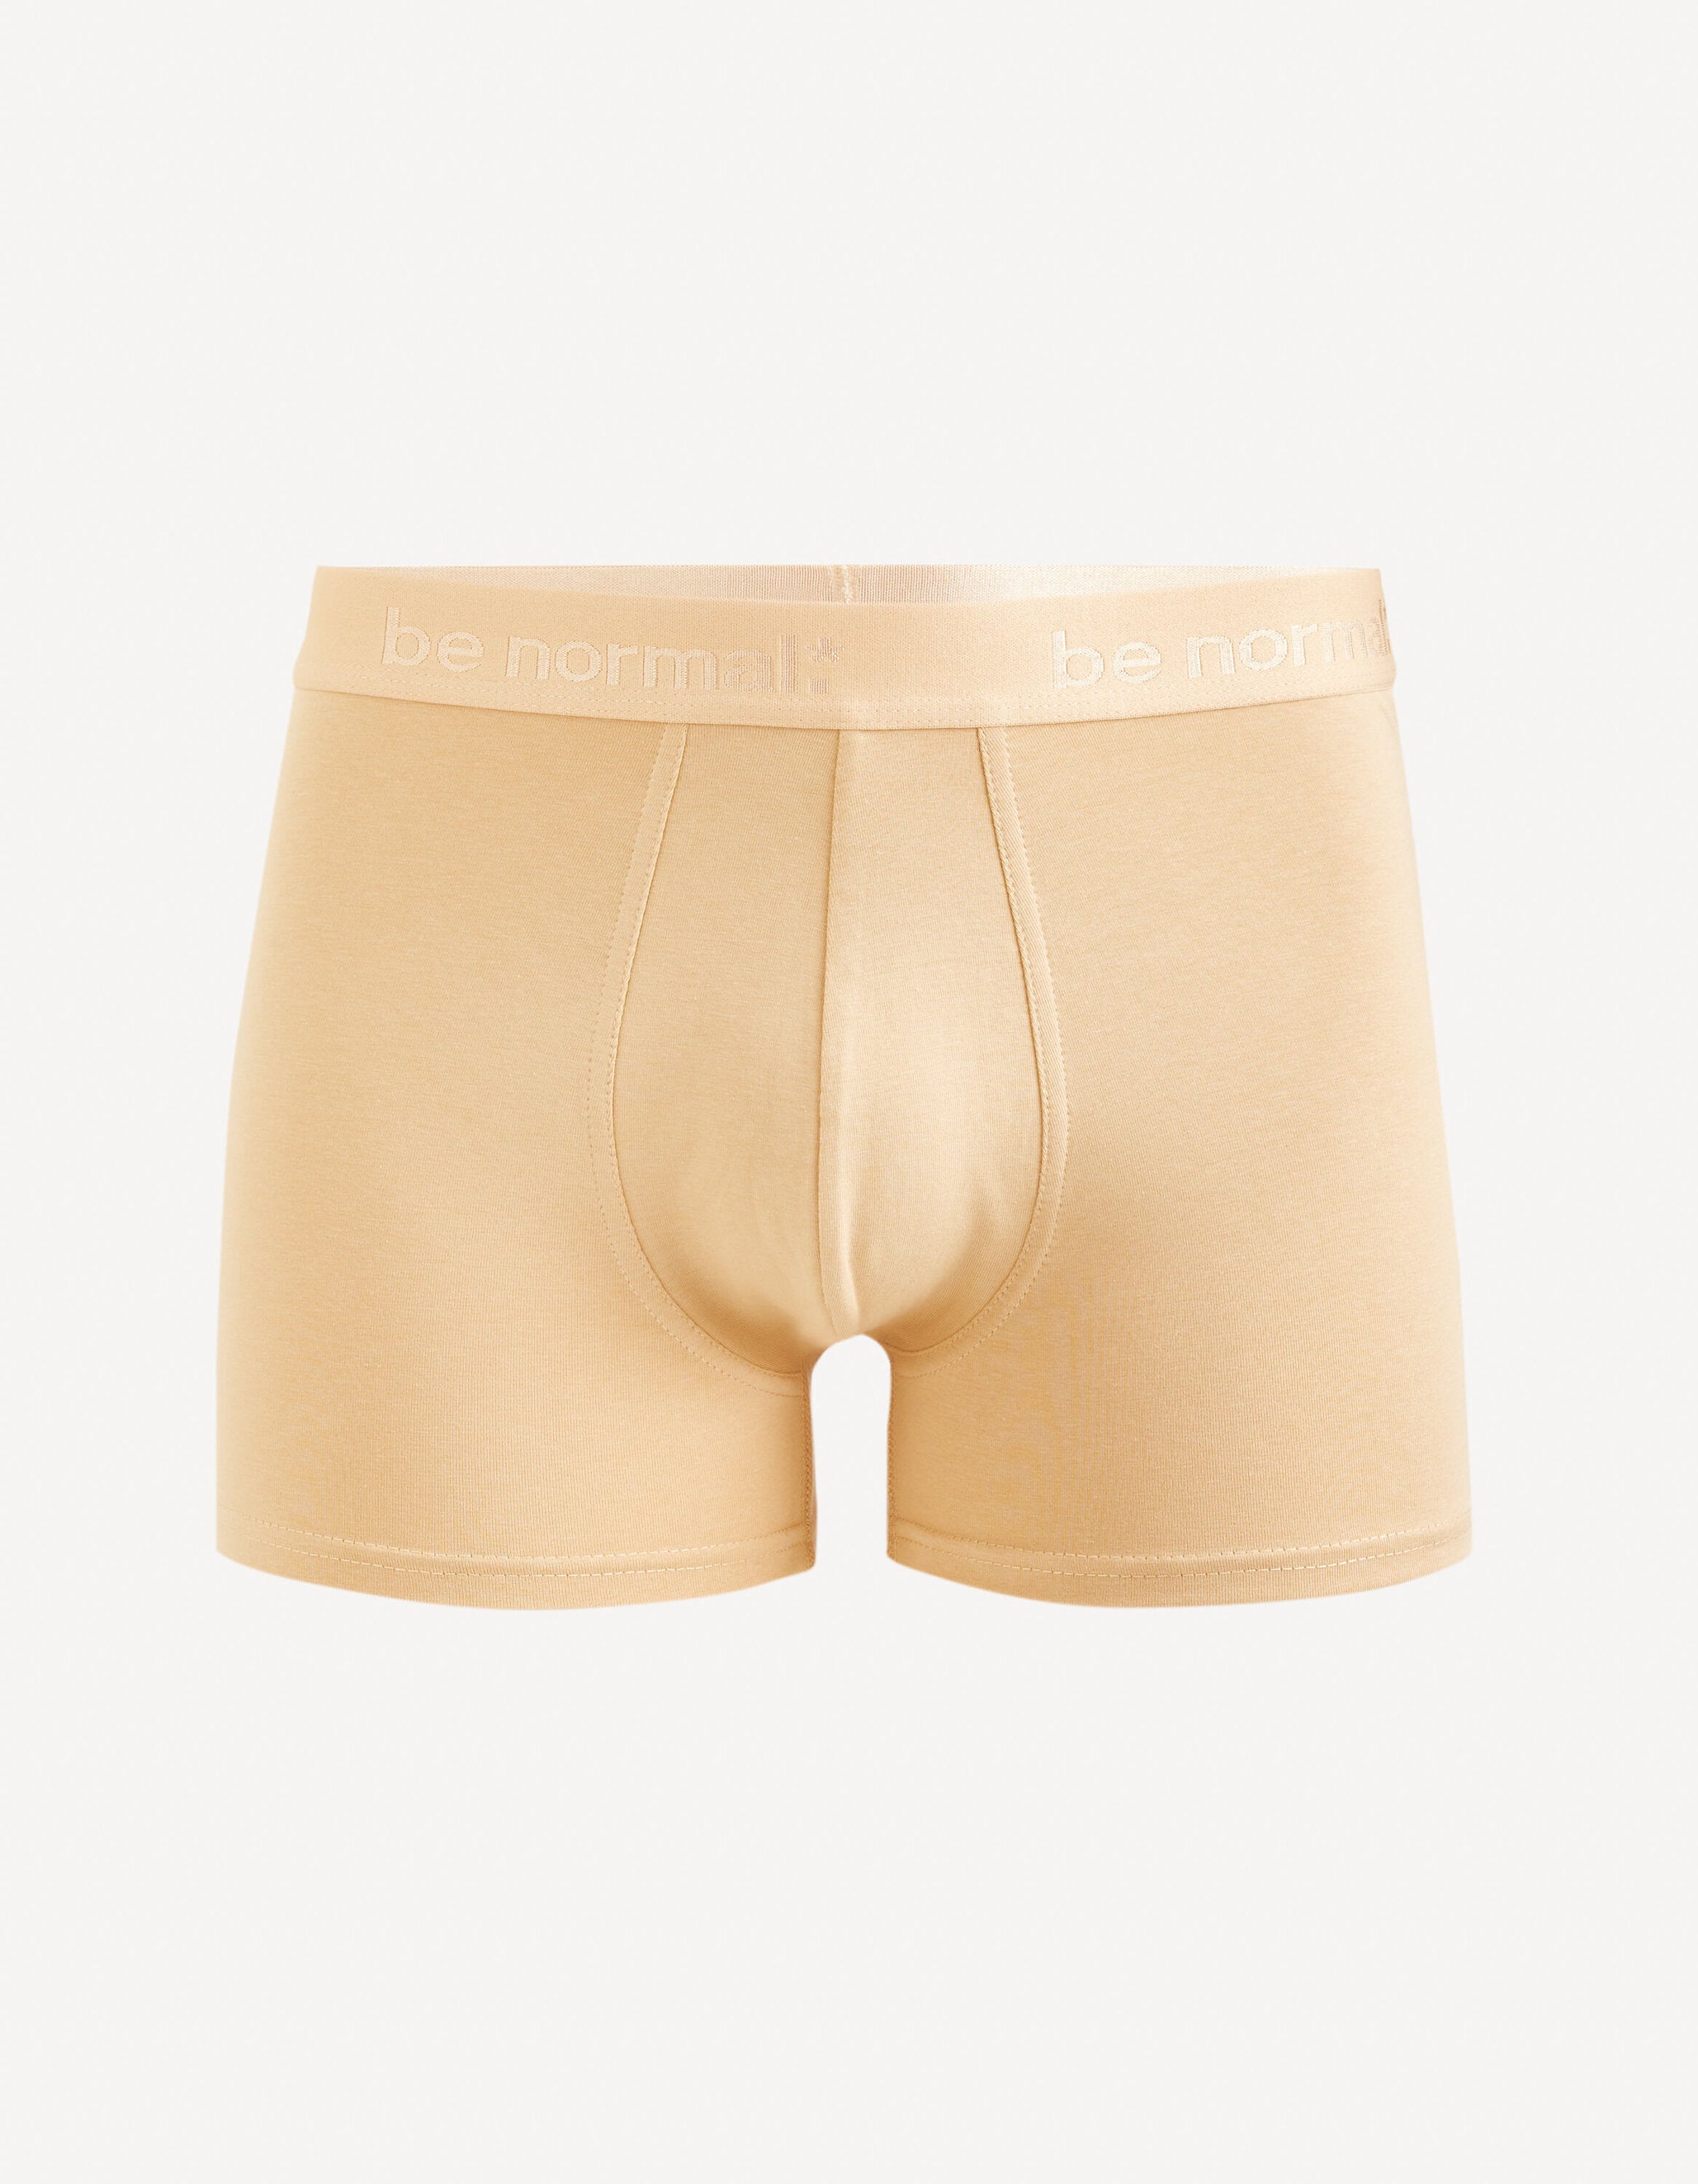 Stretch Cotton Boxer Shorts - Beige_BINORMAL_BEIGE_01